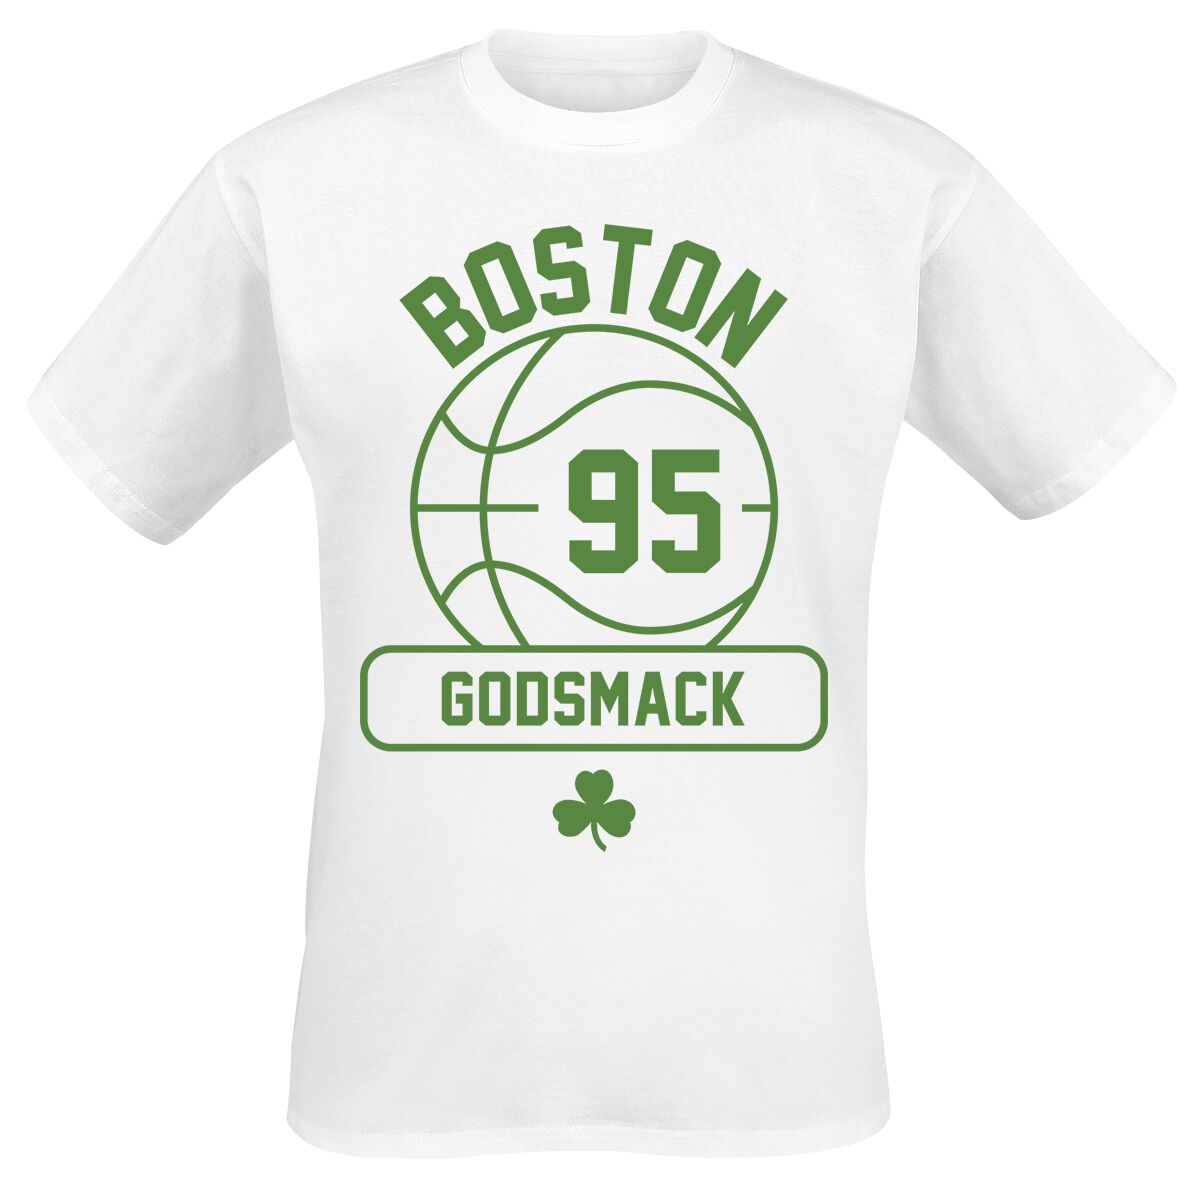 Godsmack T-Shirt - Retro Gym - S bis 3XL - für Männer - Größe 3XL - weiß  - Lizenziertes Merchandise!